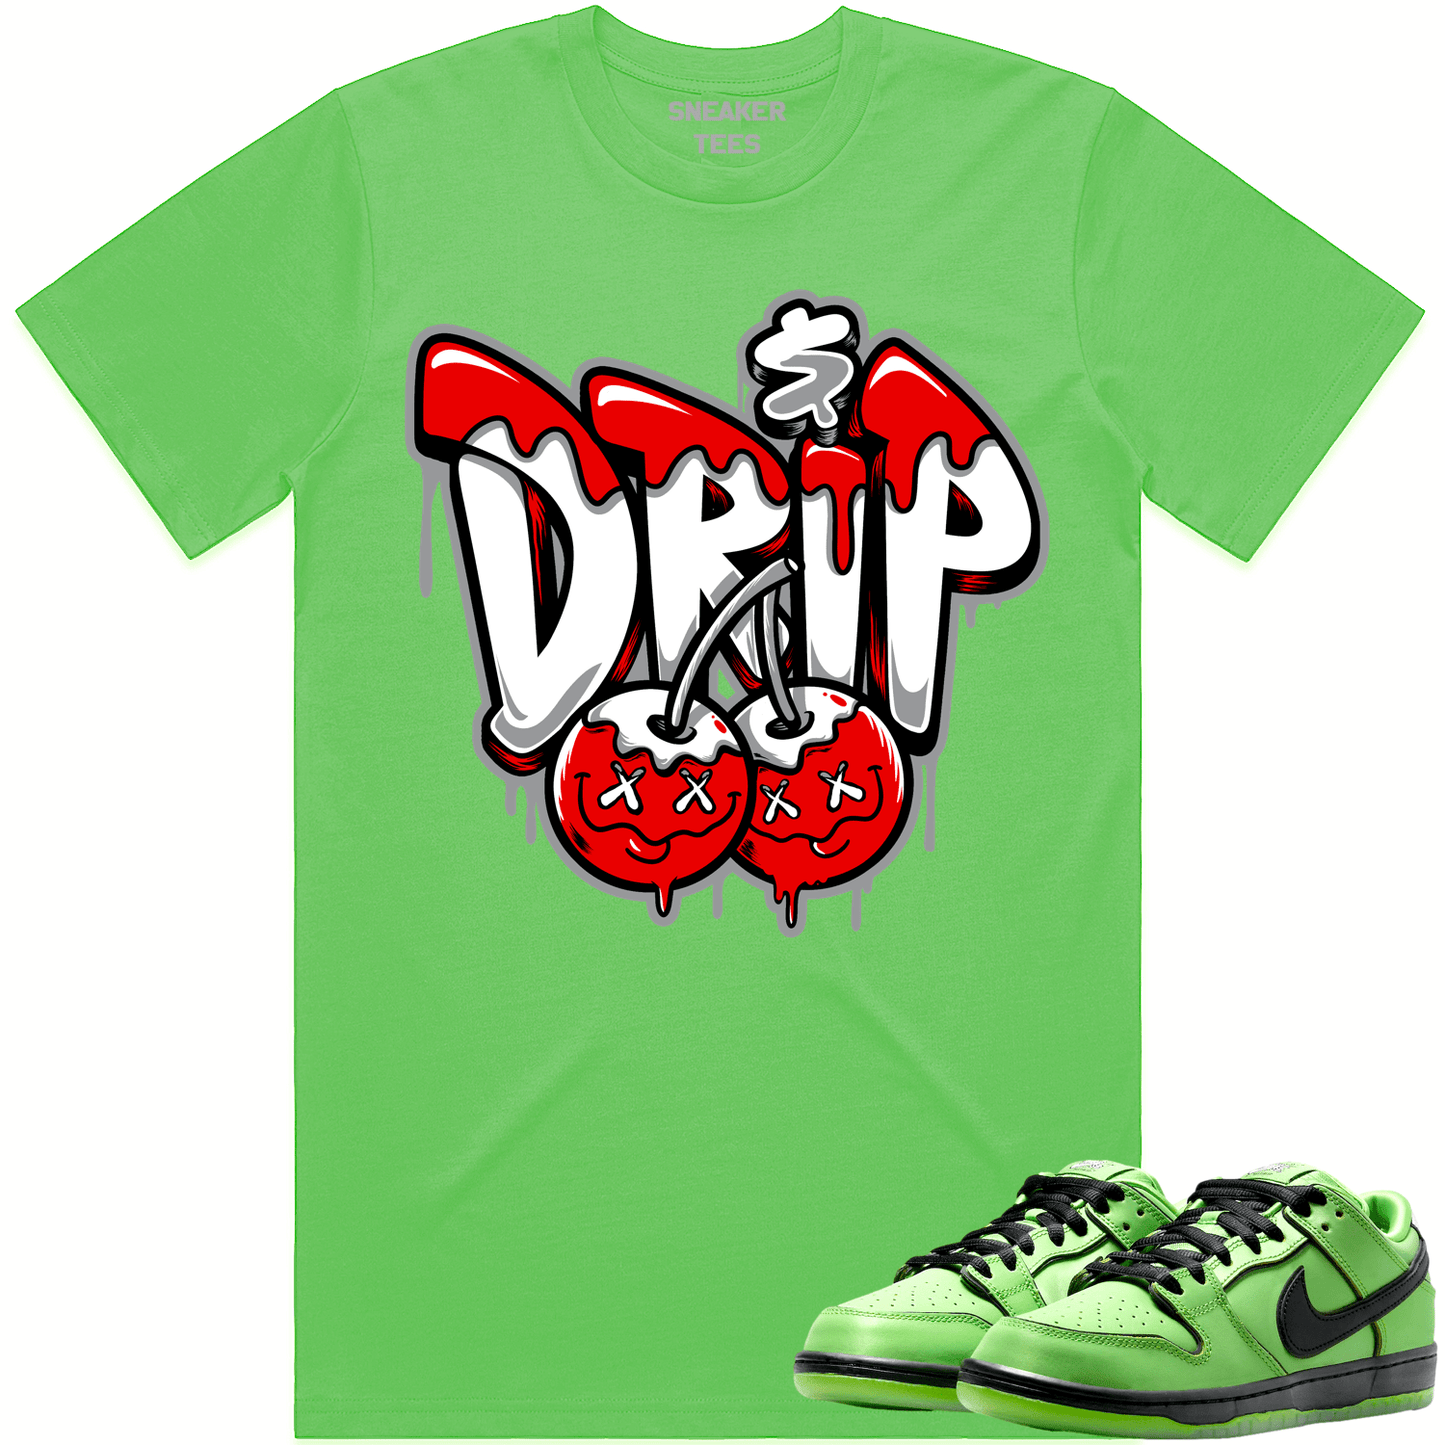 Powerpuff Dunks Shirt - Buttercup Dunks Shirts - Red Money Drip